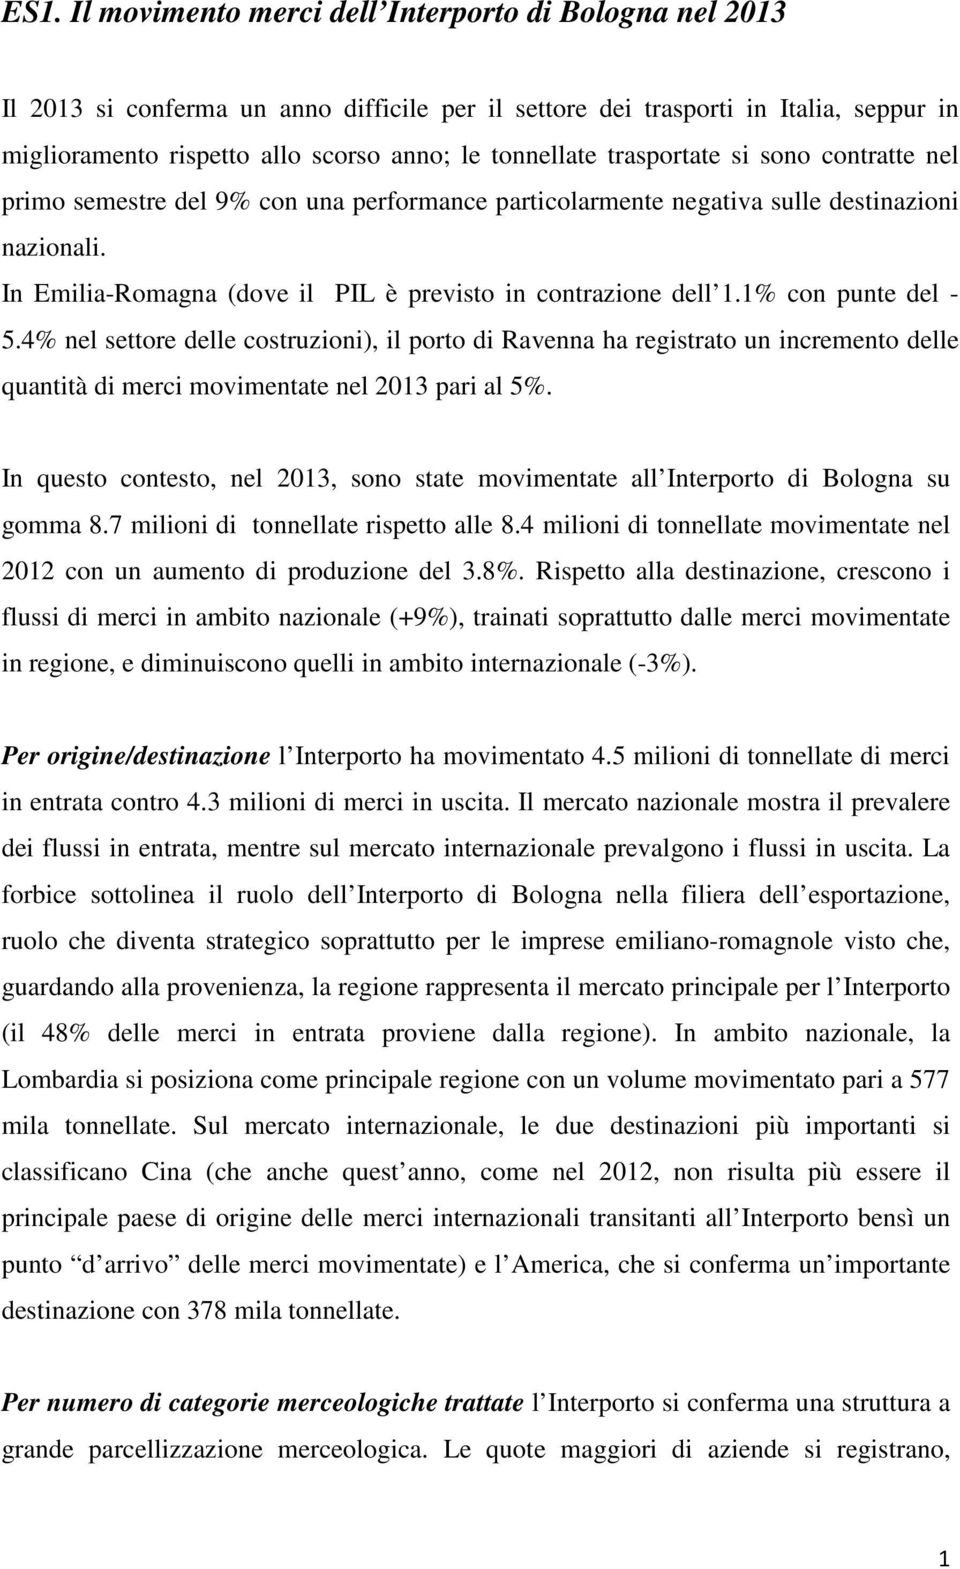 In Emilia-Romagna (dove il PIL è previsto in contrazione dell 1.1% con punte del - 5.